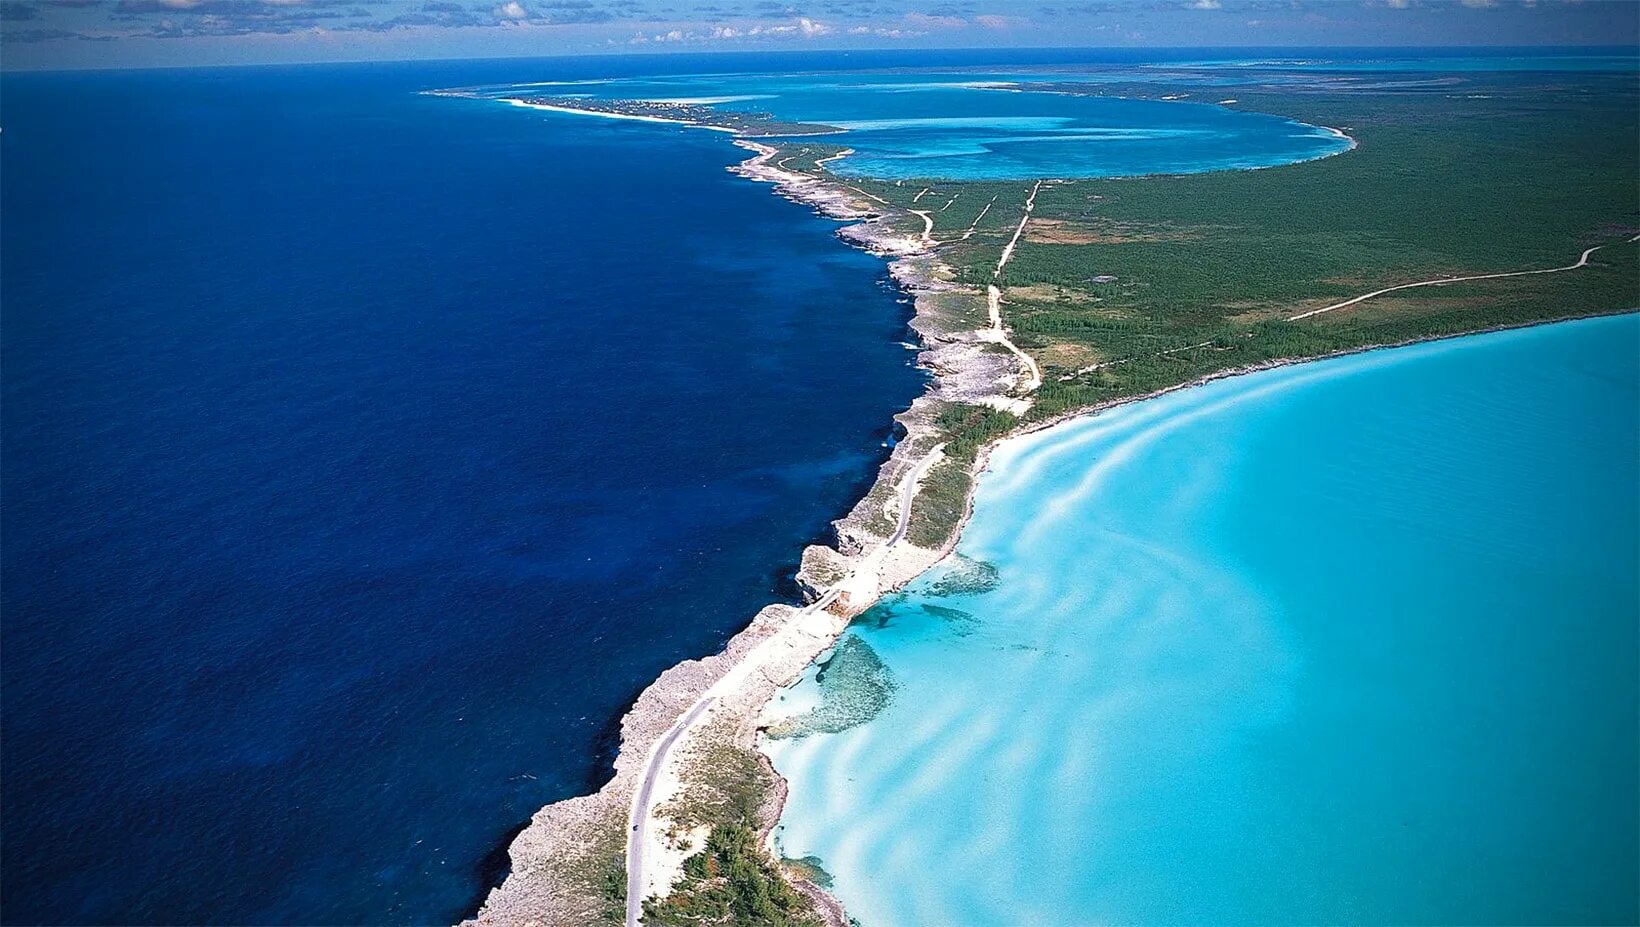 Мыс индийского океана. Эльютера Багамы. Элеутера (Багамские острова). Карибское море Атлантический океан. Остров Эльютера.